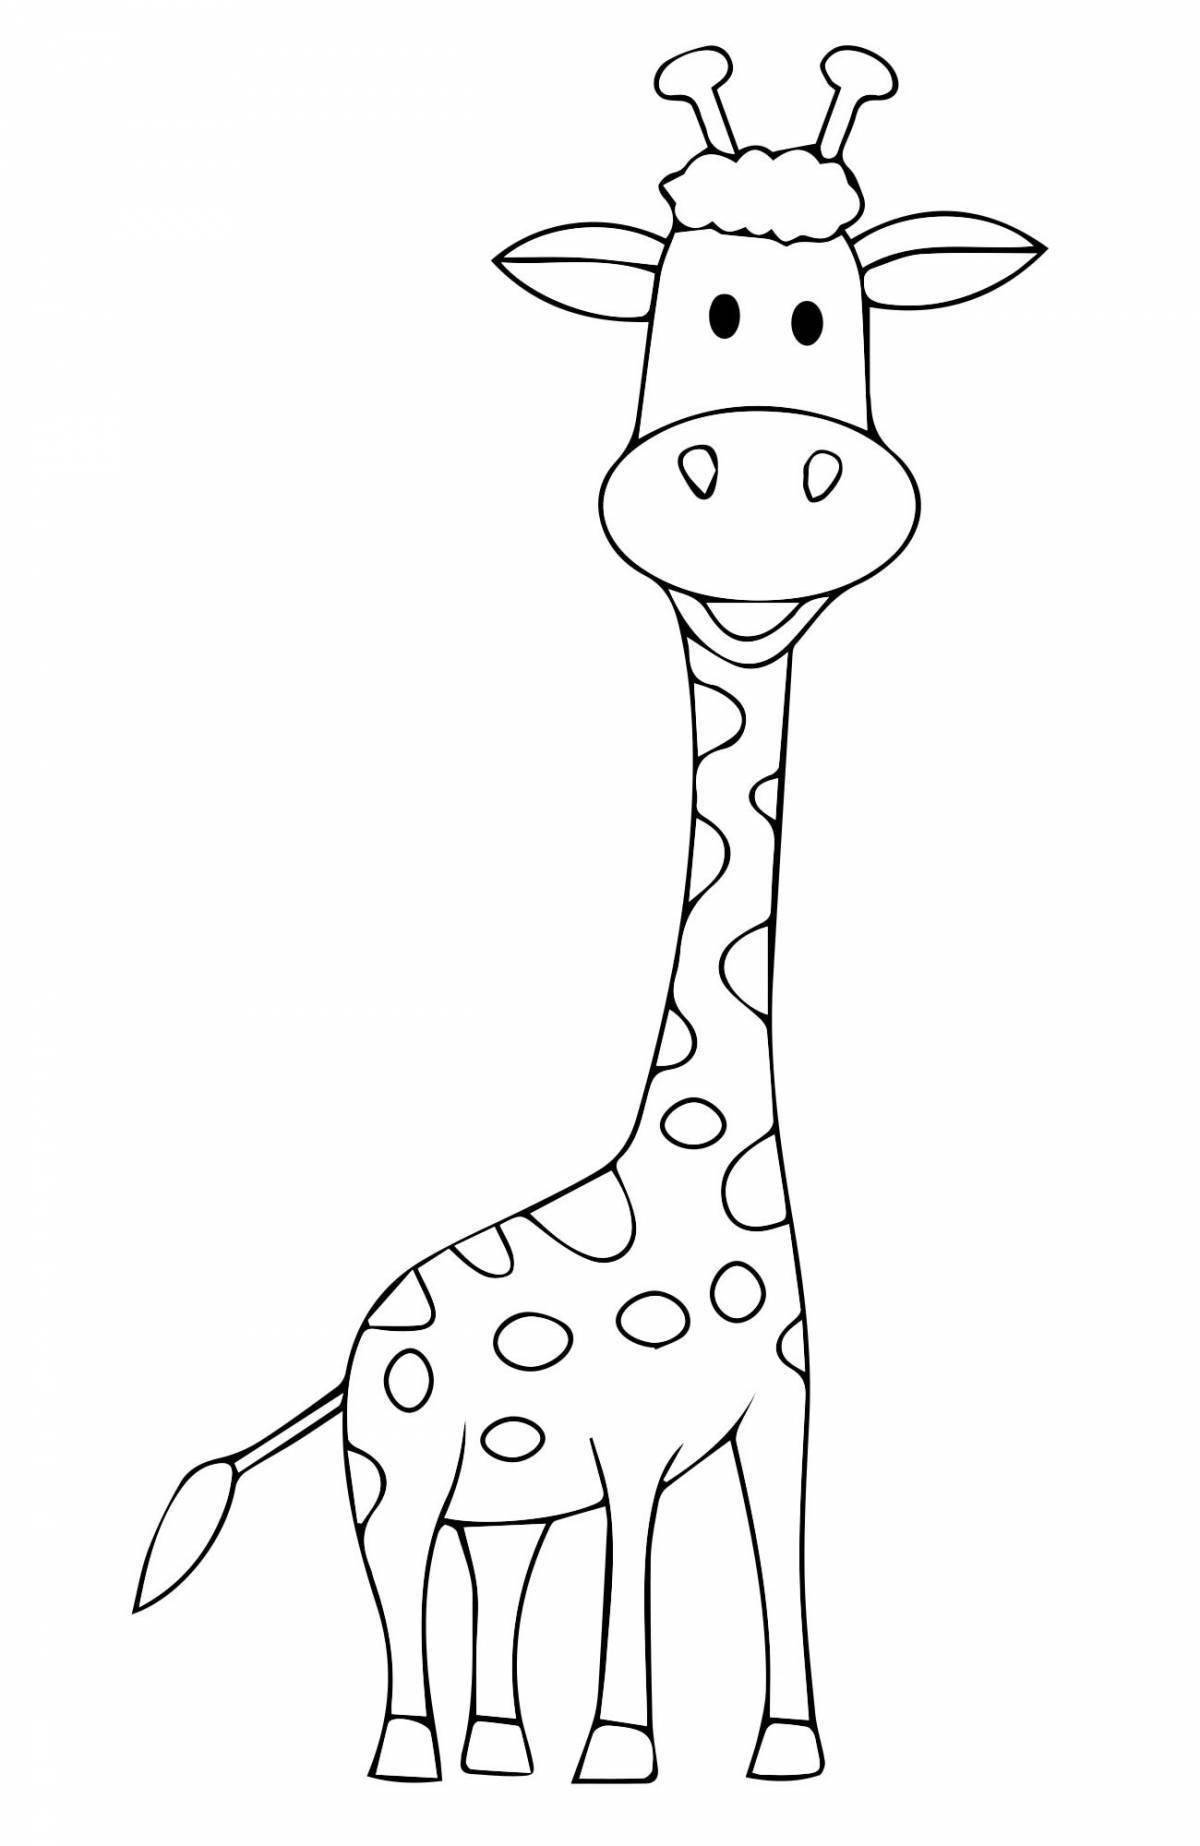 Яркая раскраска жирафа для детей 3-4 лет